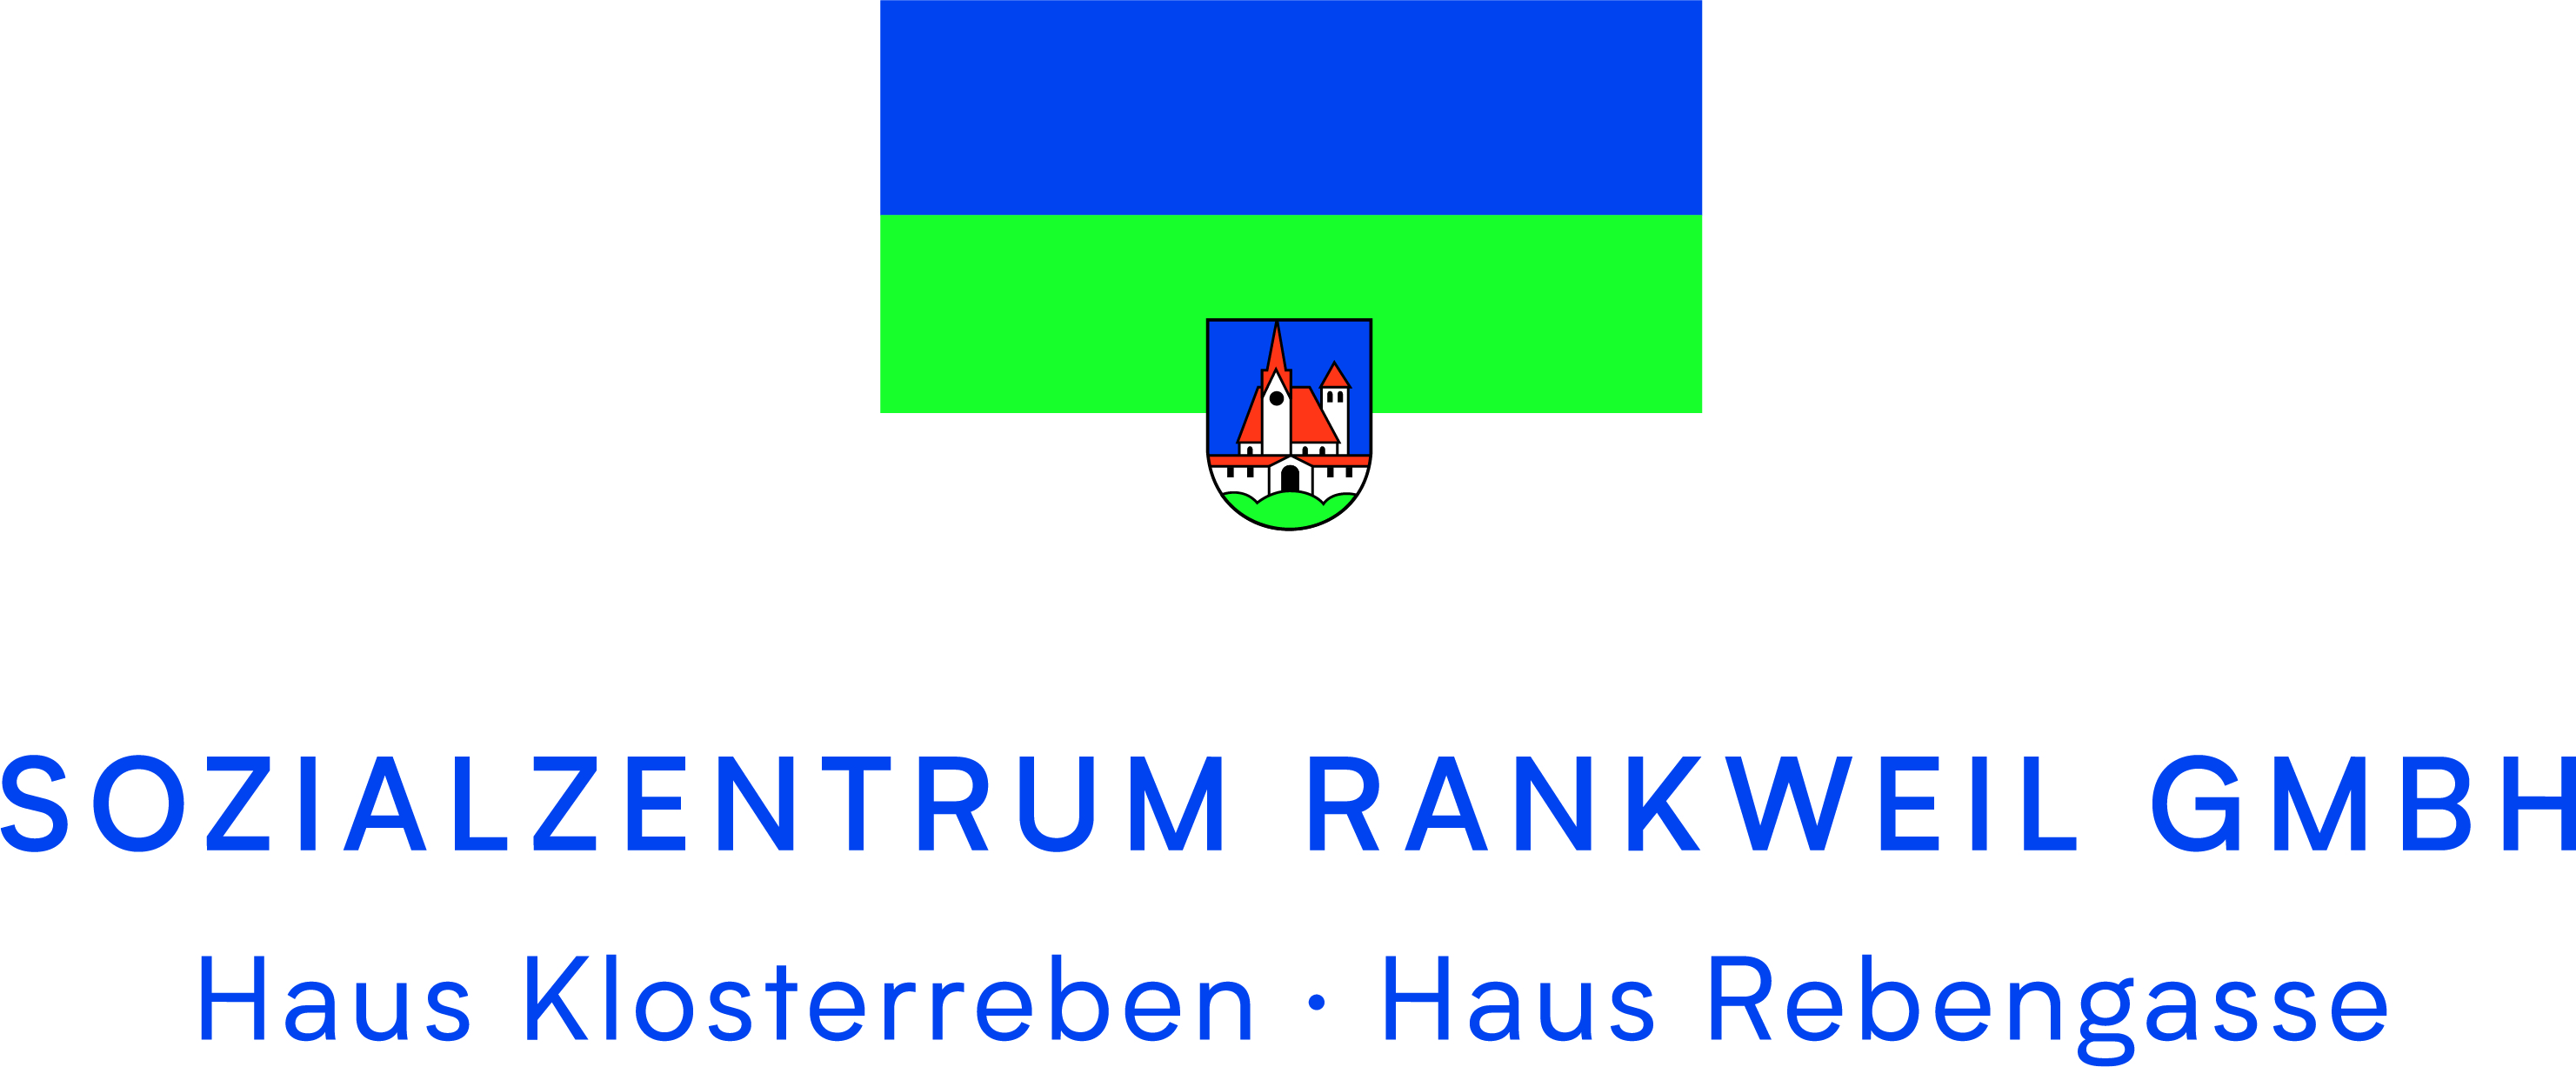 Sozialzentrum Rankweil GmbH